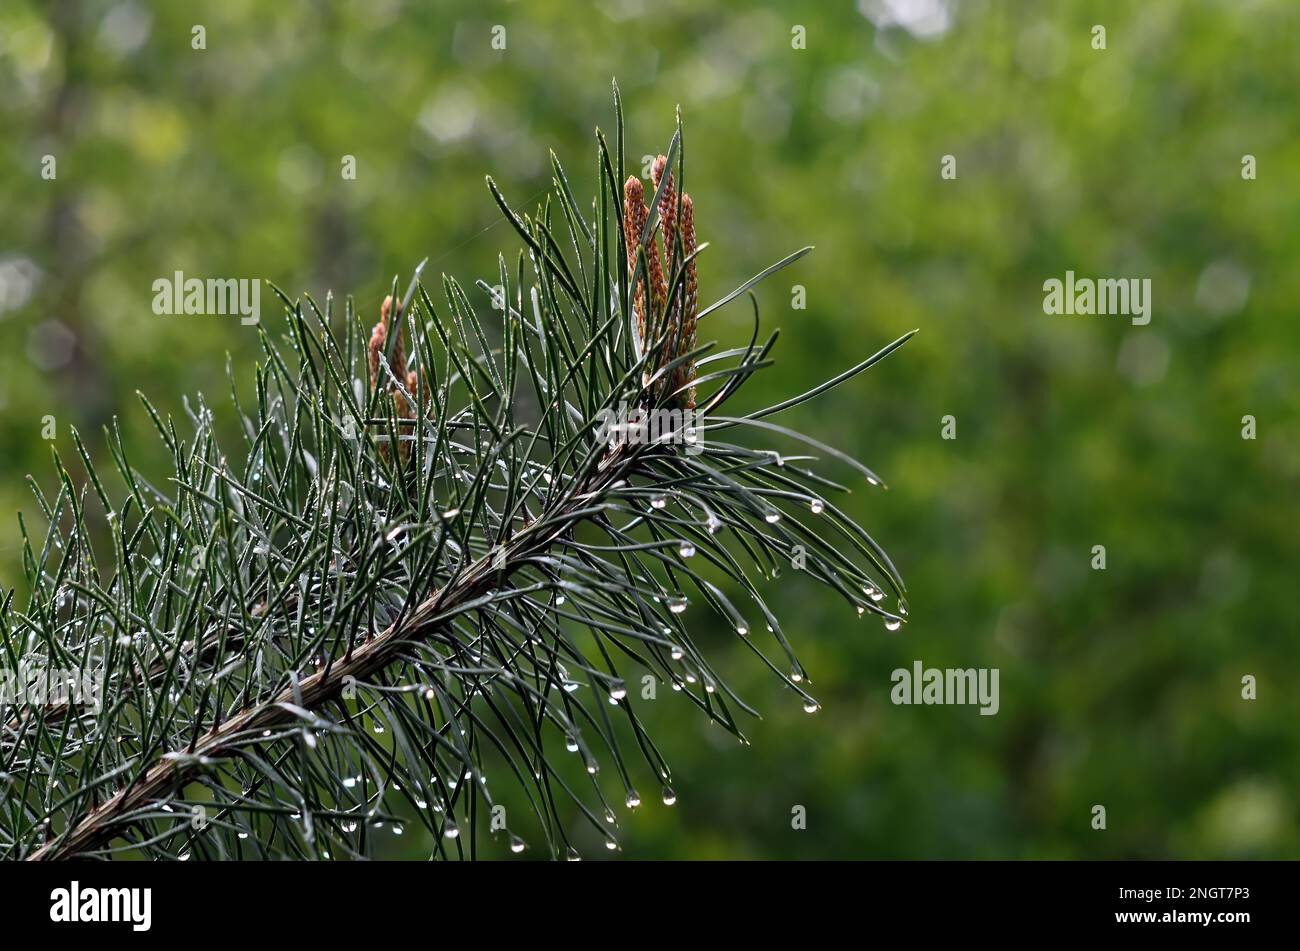 conos jóvenes en una rama de abeto después de la lluvia, primer plano Foto de stock